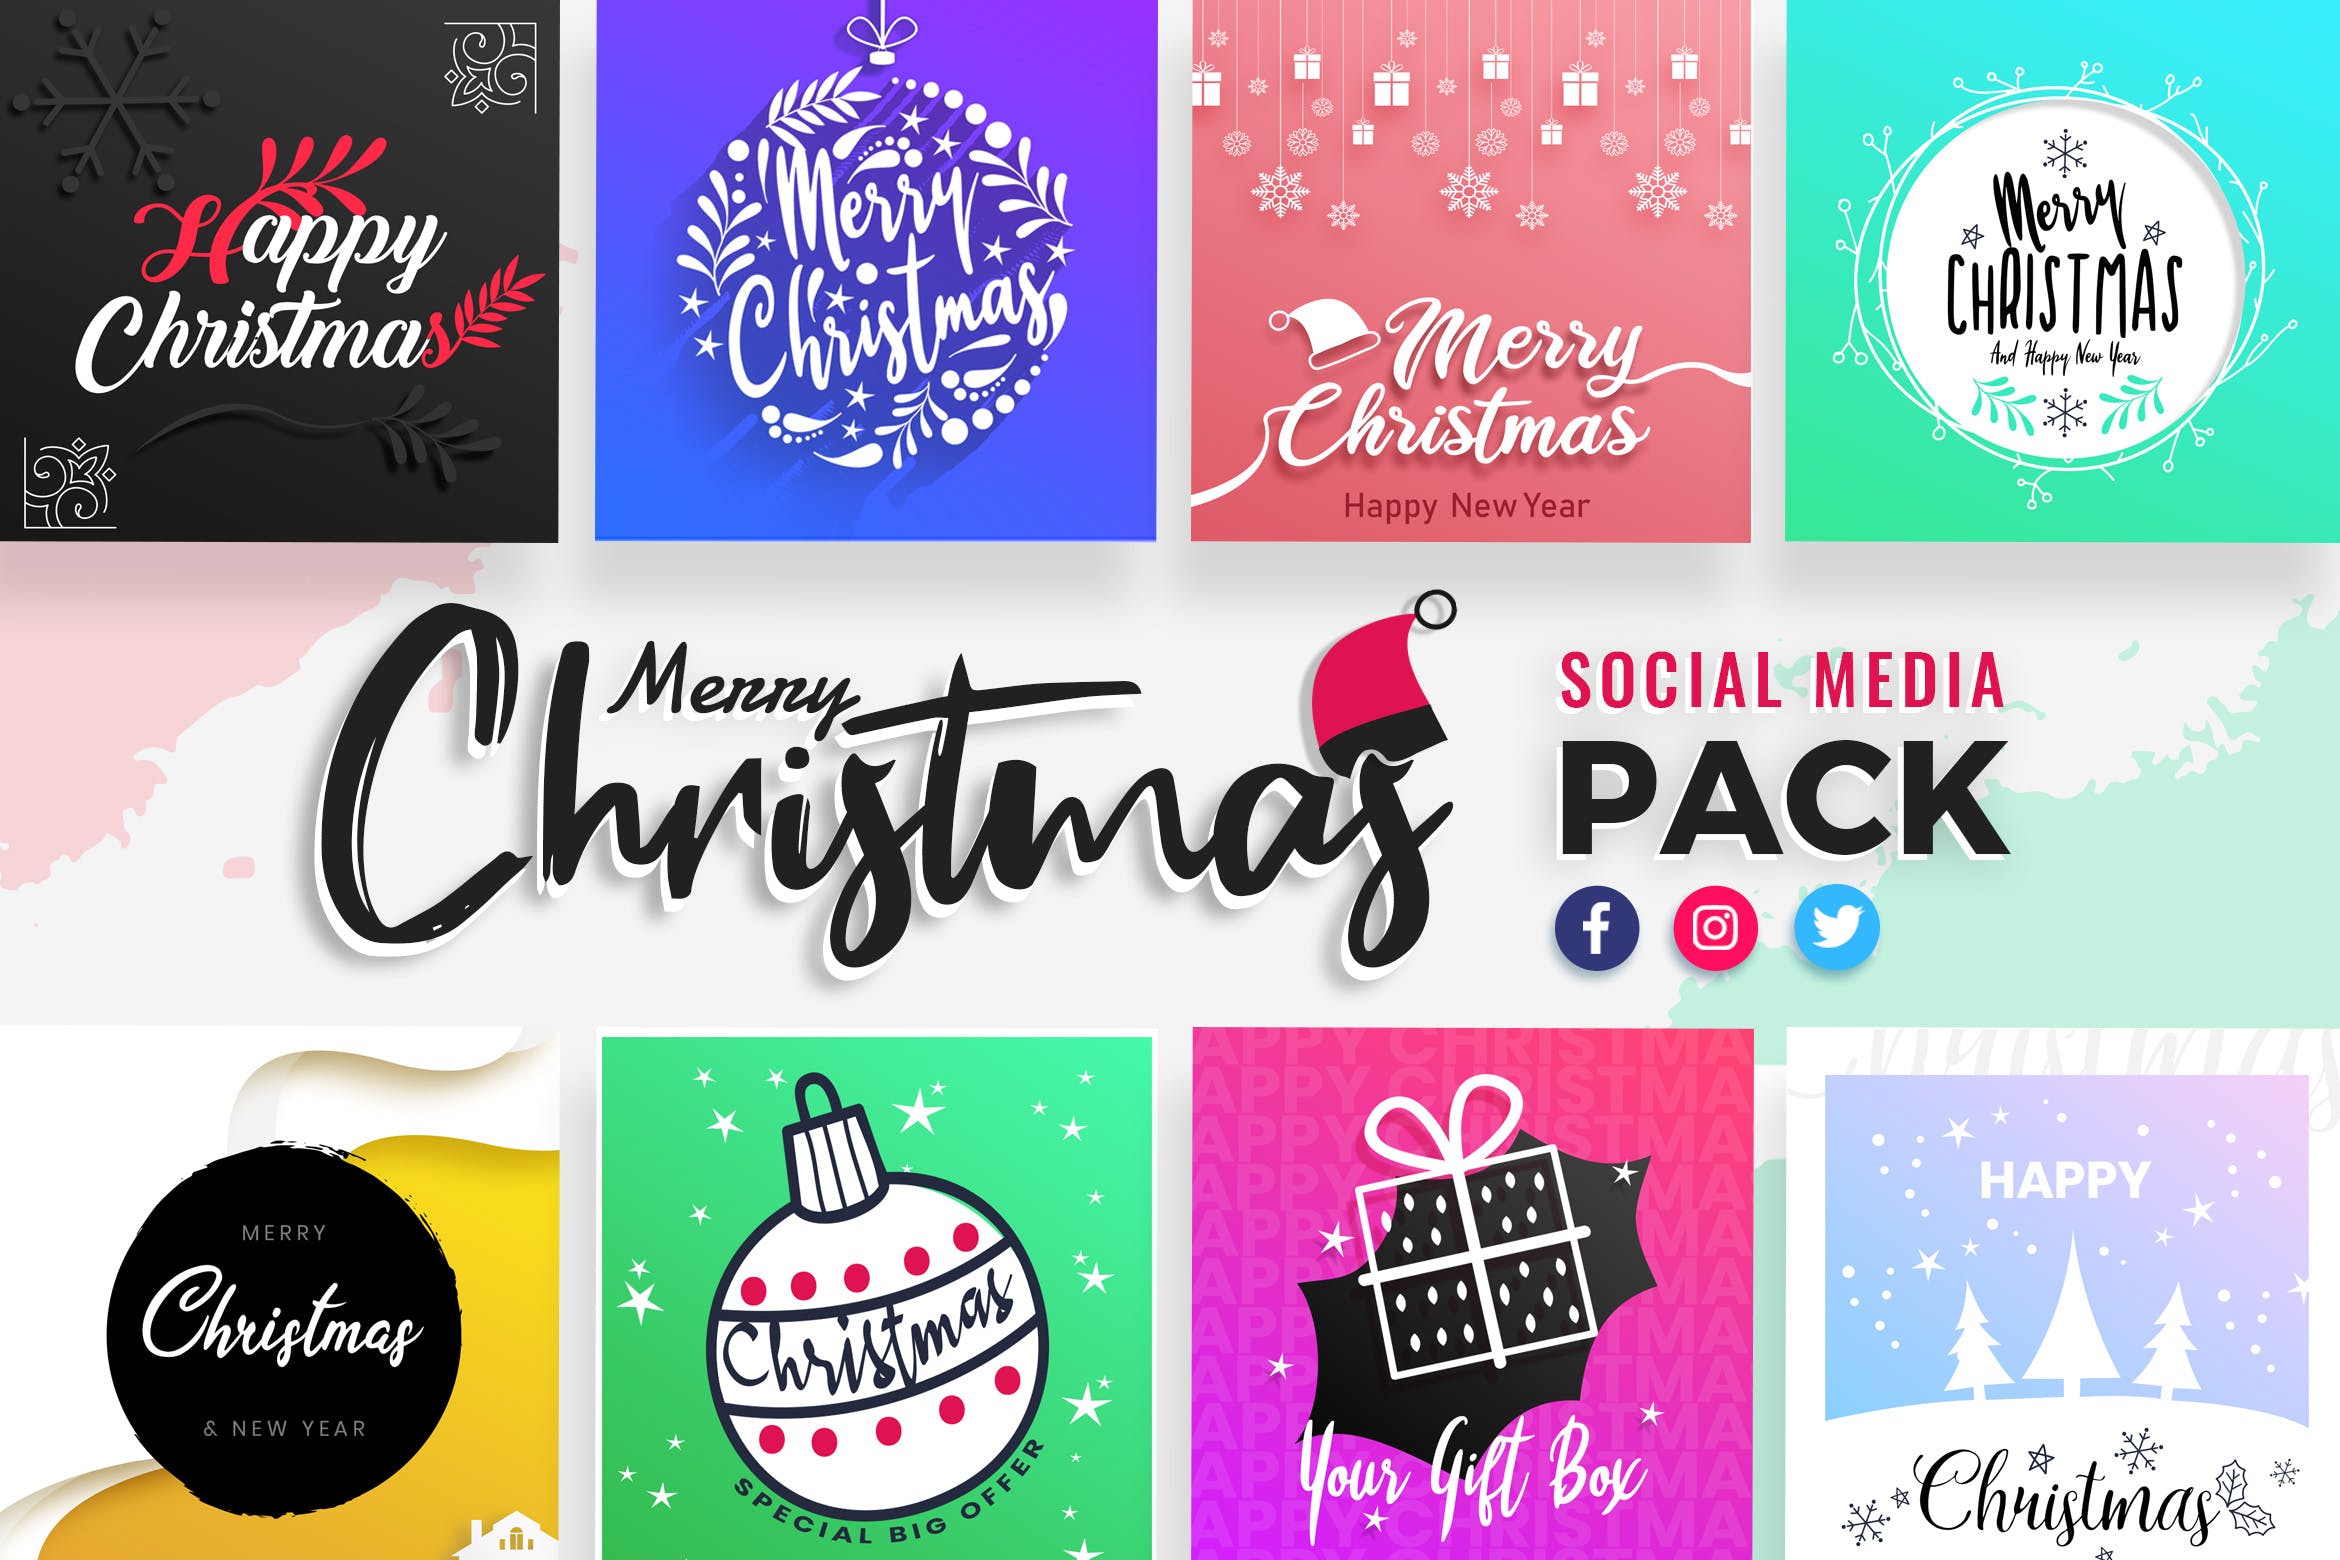 圣诞节主题社交媒体推广设计素材包 Christmas Social Media Templates插图